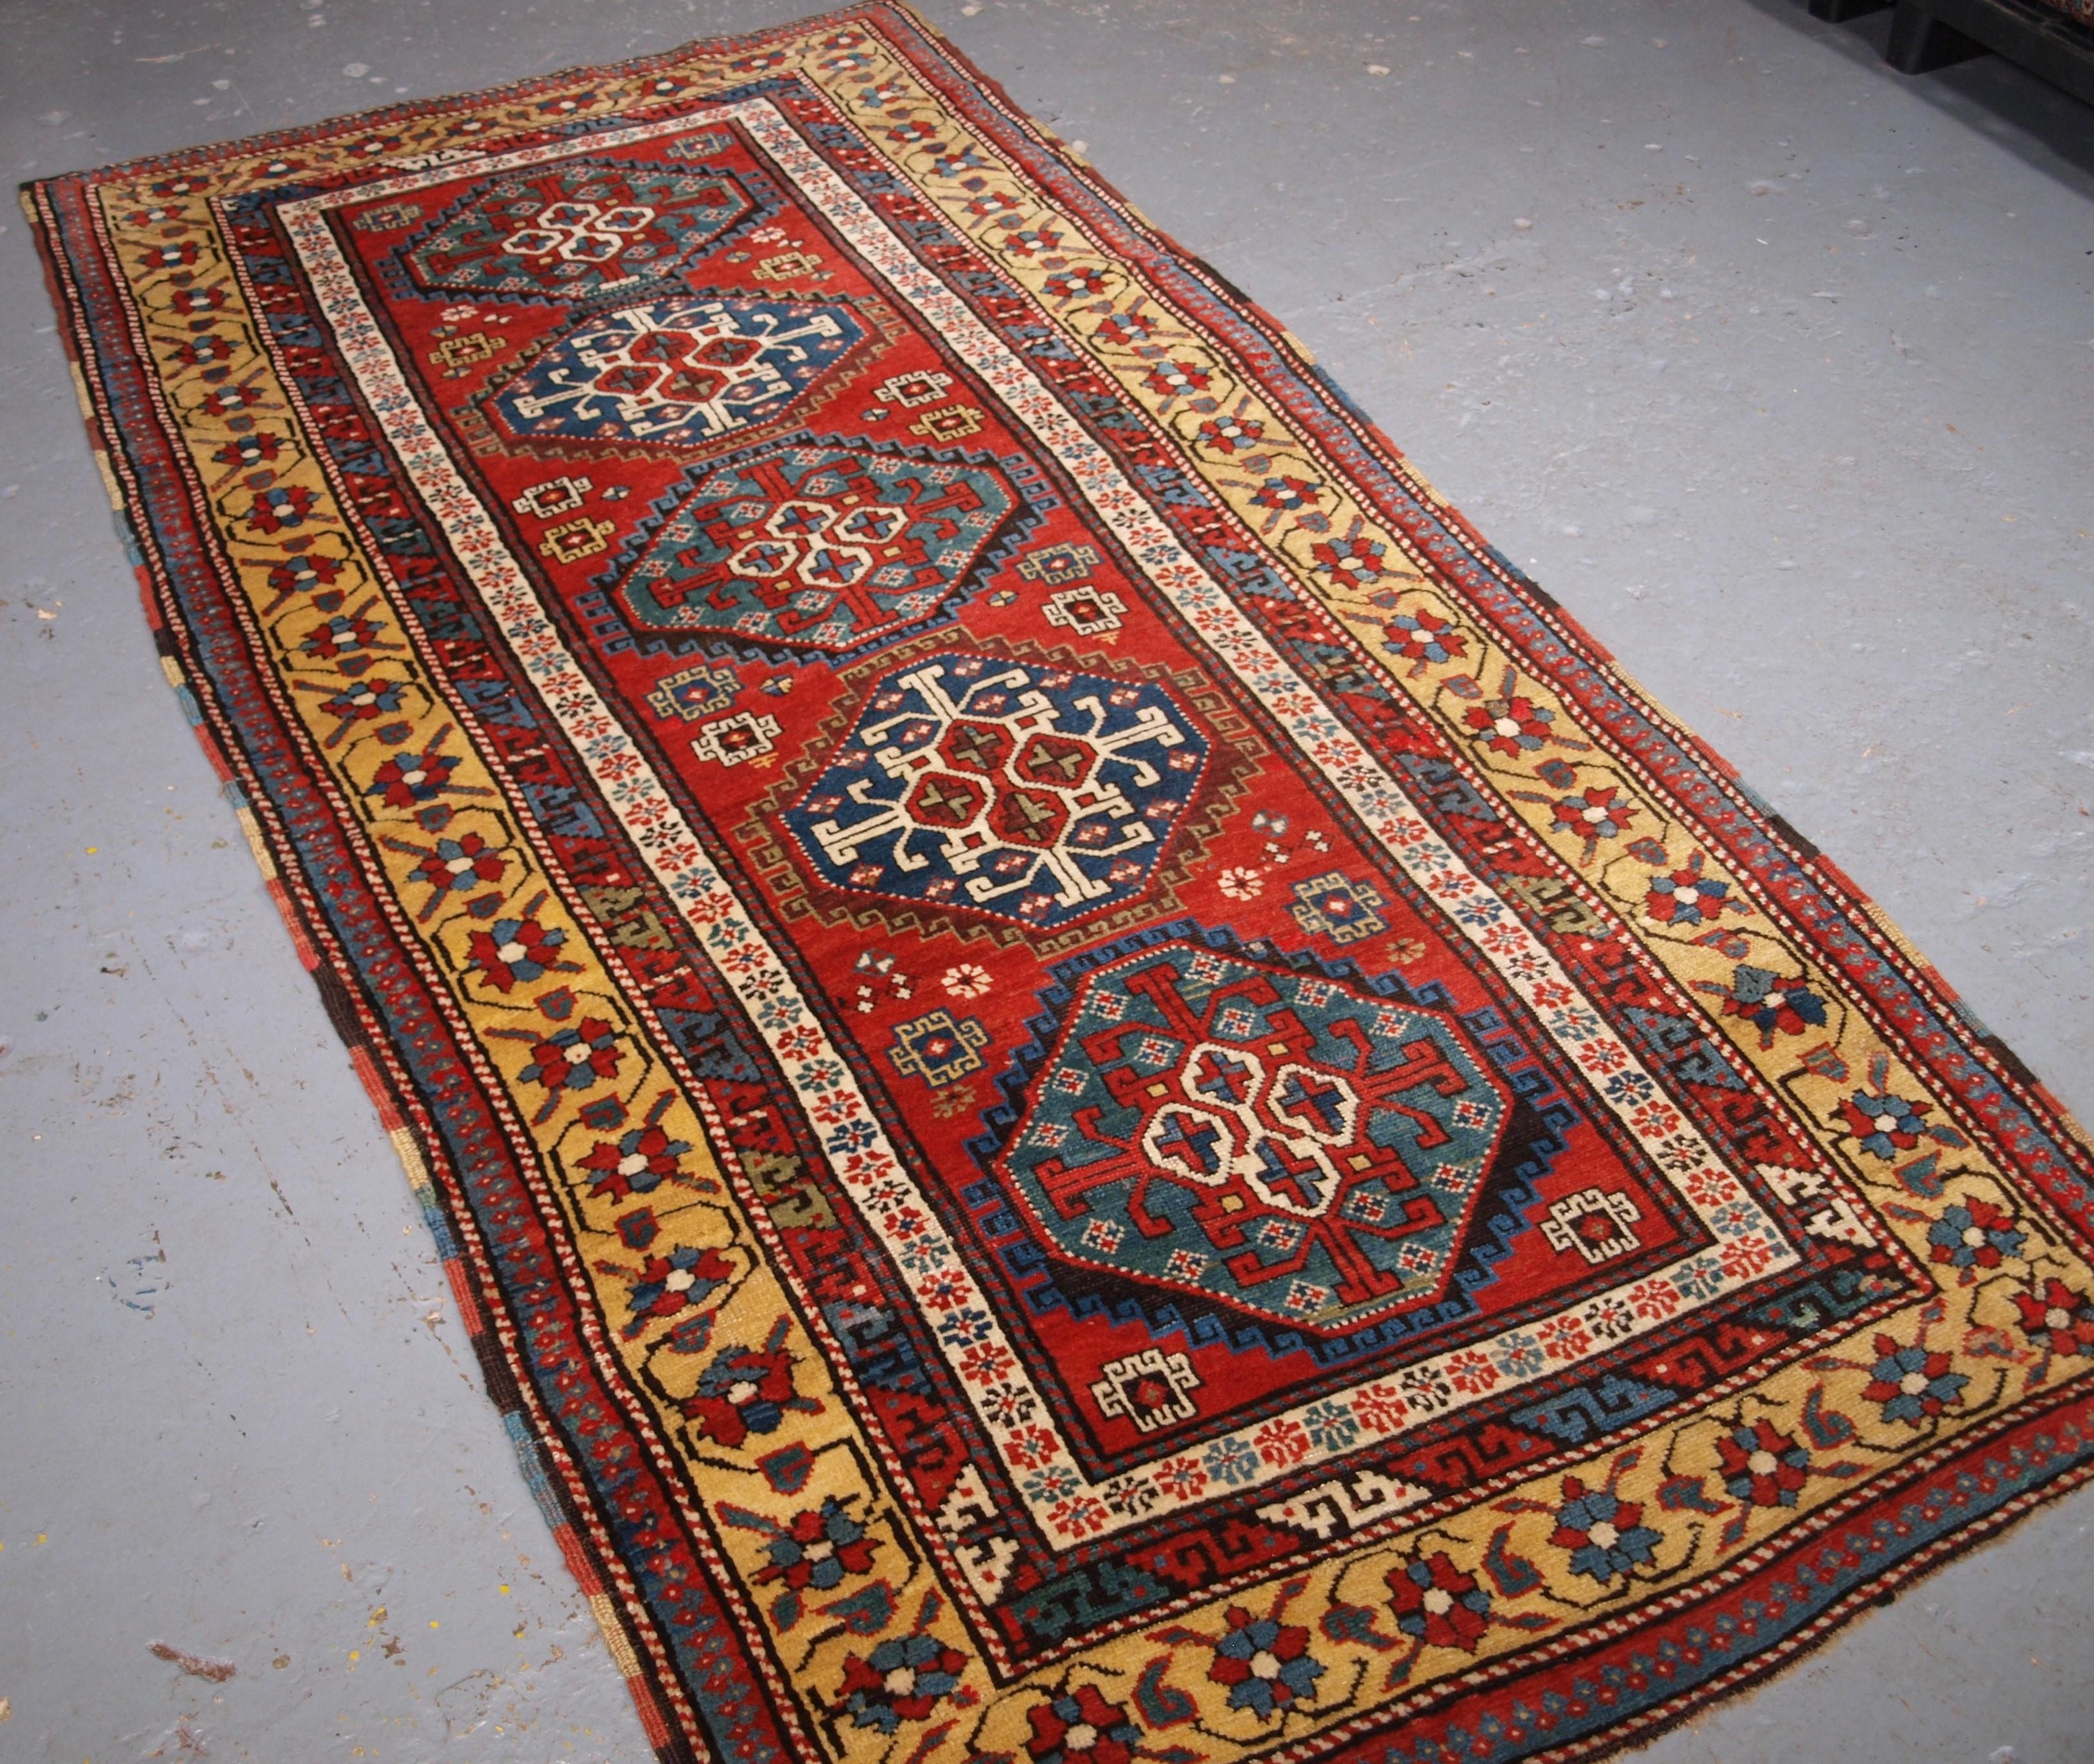 Ein antiker, langer Teppich aus dem südkaukasischen Karabagh-Gebiet mit einer vertikalen Reihe von fünf Oktogonen auf klarem roten Grund. Dies ist ein wirklich herausragendes Beispiel für kaukasische Weberei. Die Qualität der Wolle ist